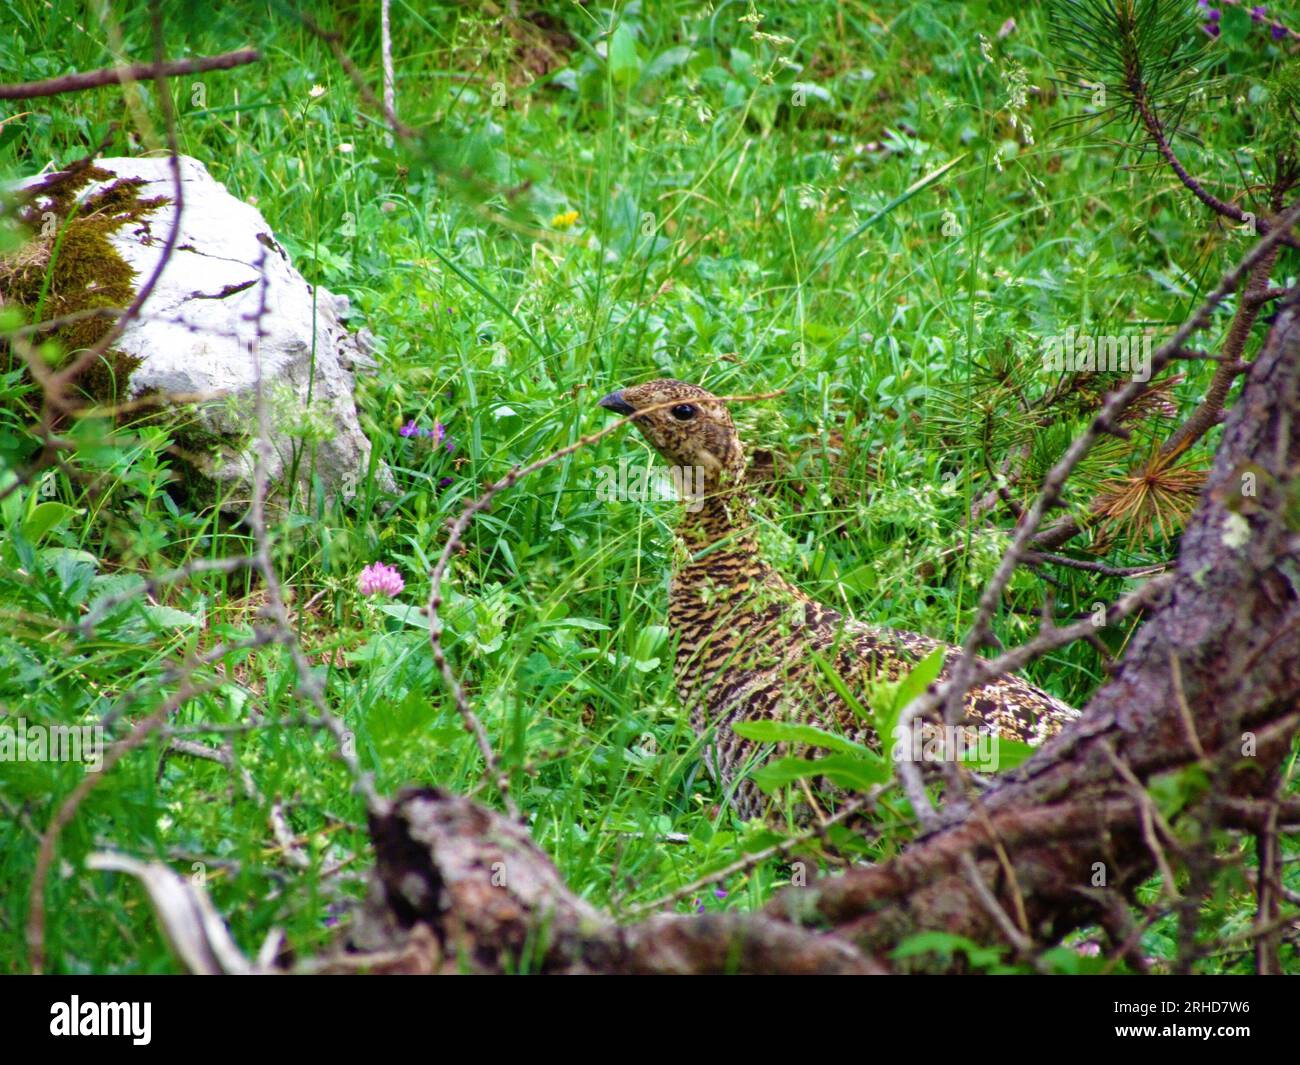 Ptarmigan rocheux (Lagopus muta) oiseau de taille moyenne de la famille des tétras caché dans l'herbe Banque D'Images